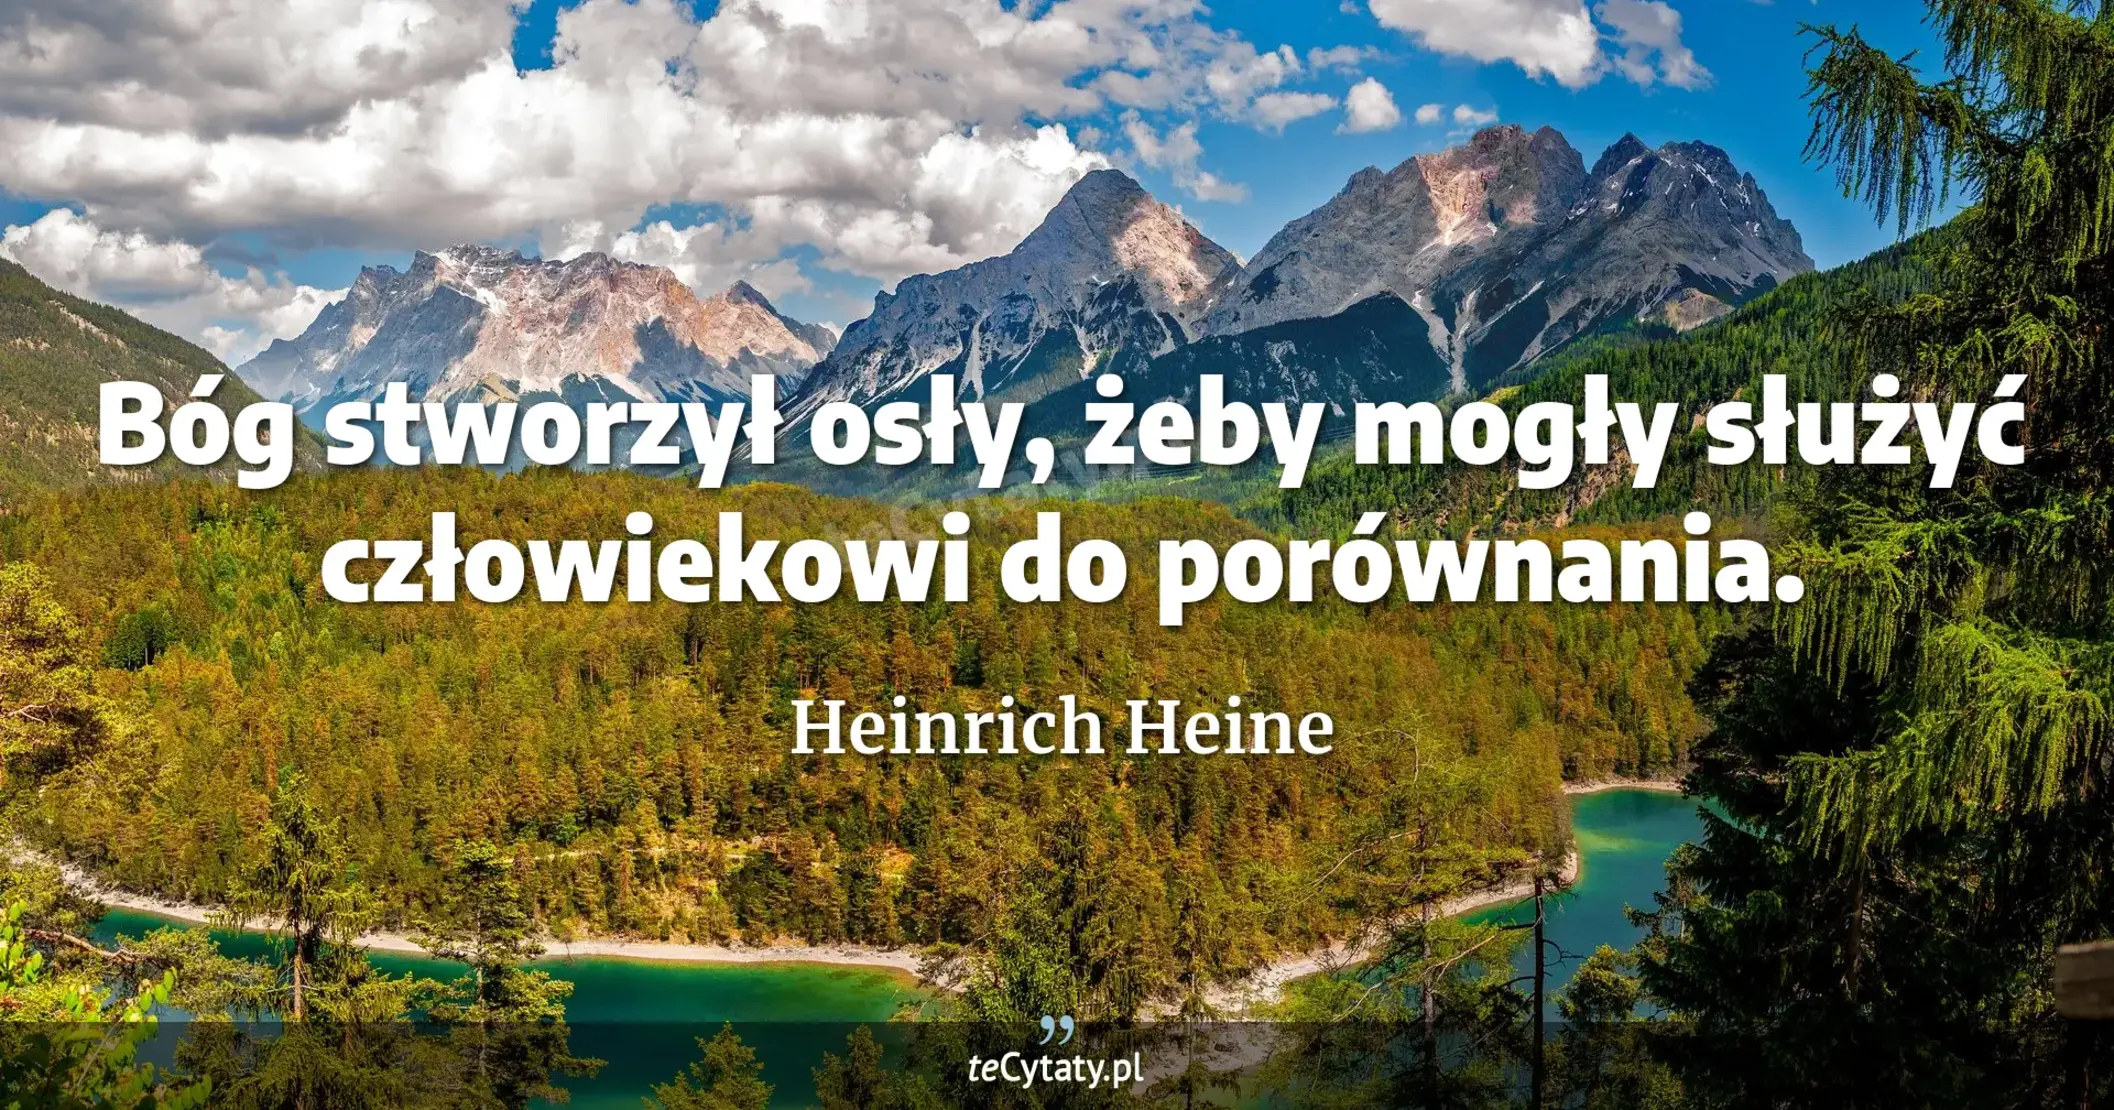 Bóg stworzył osły, żeby mogły służyć człowiekowi do porównania. - Heinrich Heine